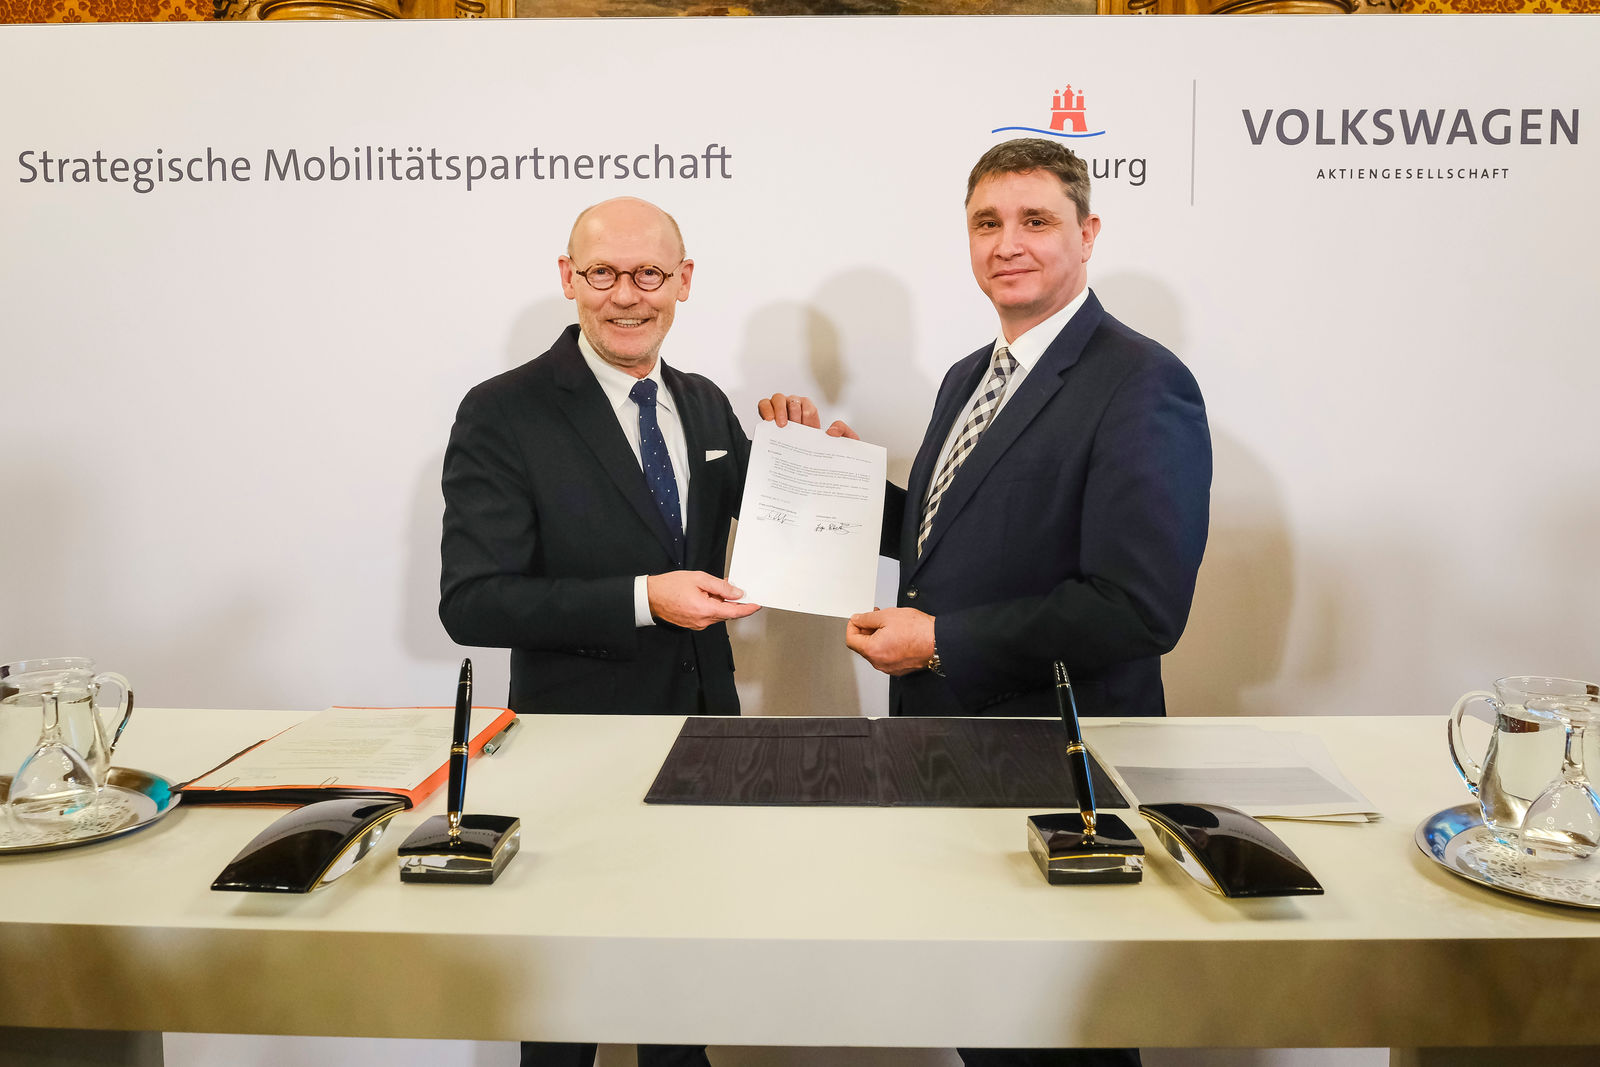 Volkswagen und Hamburg verlängern strategische Mobilitätspartnerschaft.